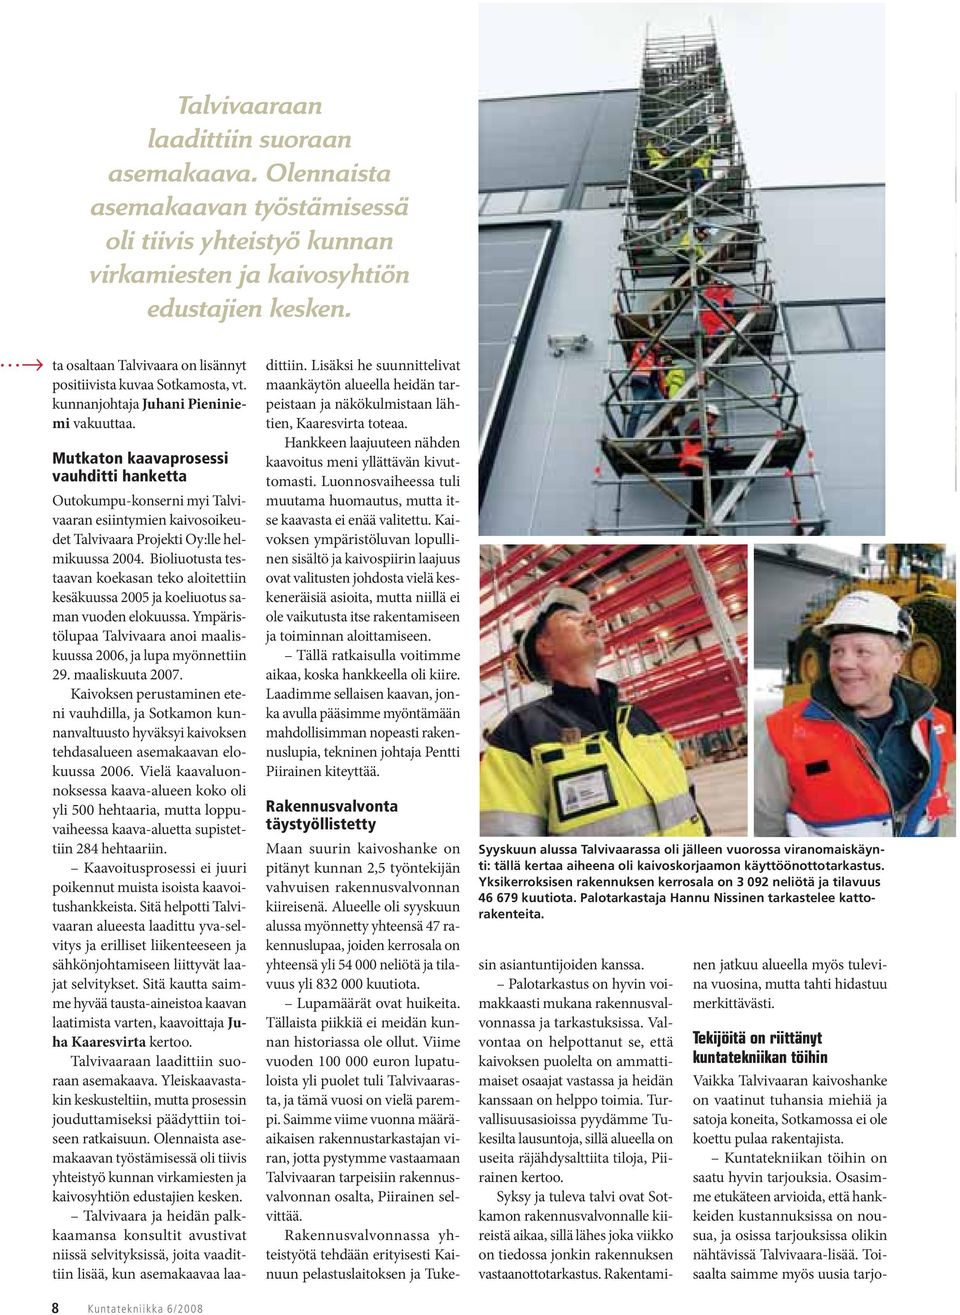 Mutkaton kaavaprosessi vauhditti hanketta Outokumpu-konserni myi Talvivaaran esiintymien kaivosoikeudet Talvivaara Projekti Oy:lle helmikuussa 2004.